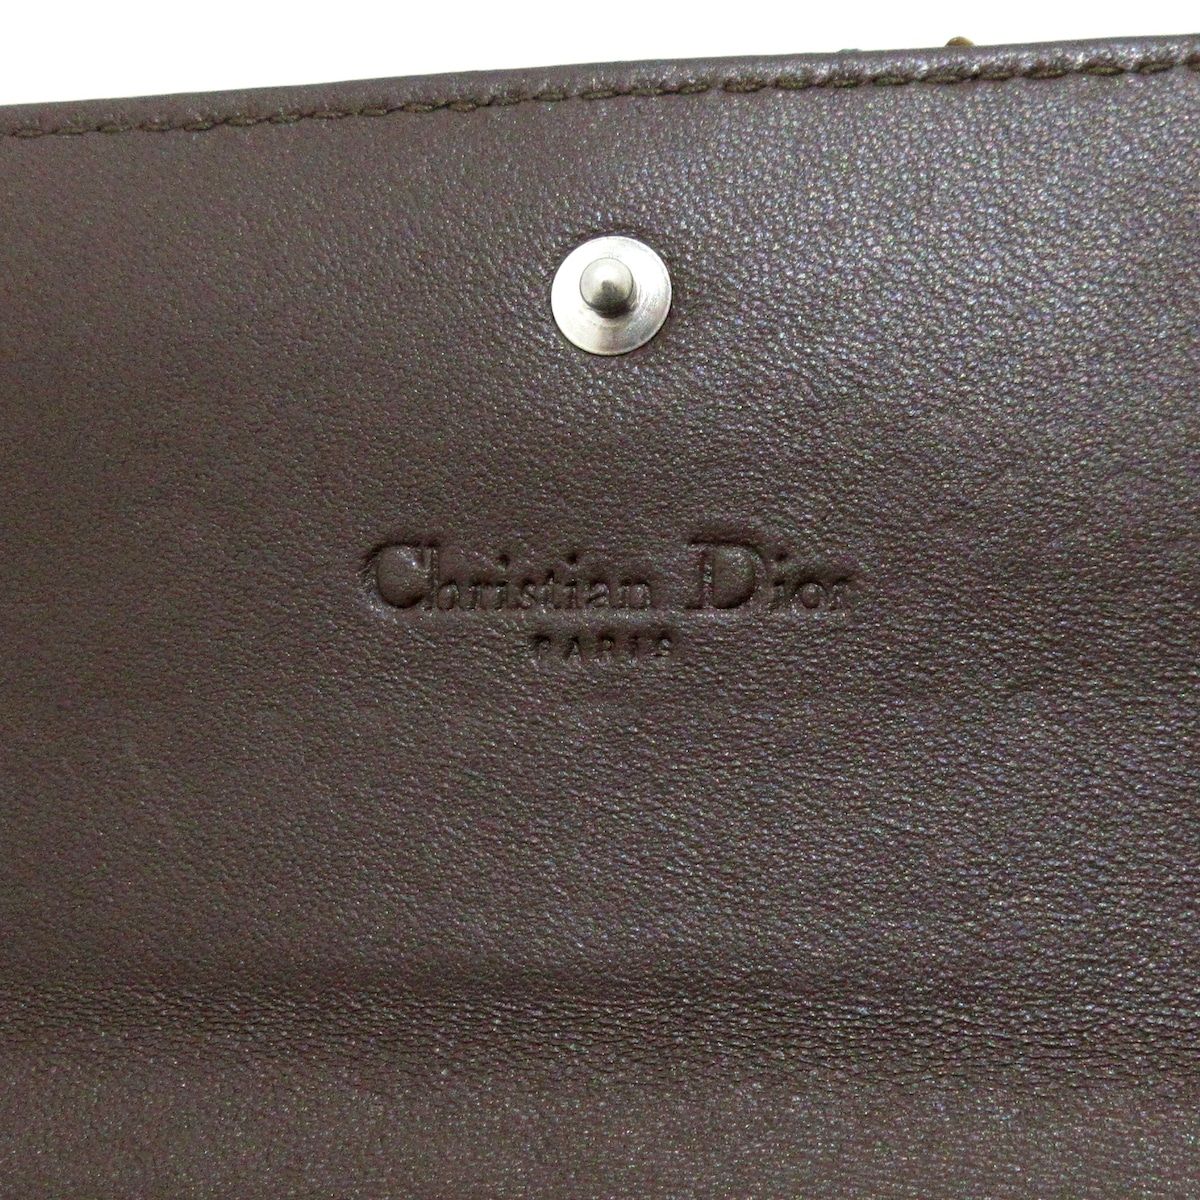 ディオール/クリスチャンディオール 財布 - ライトブルー×ブラウン 